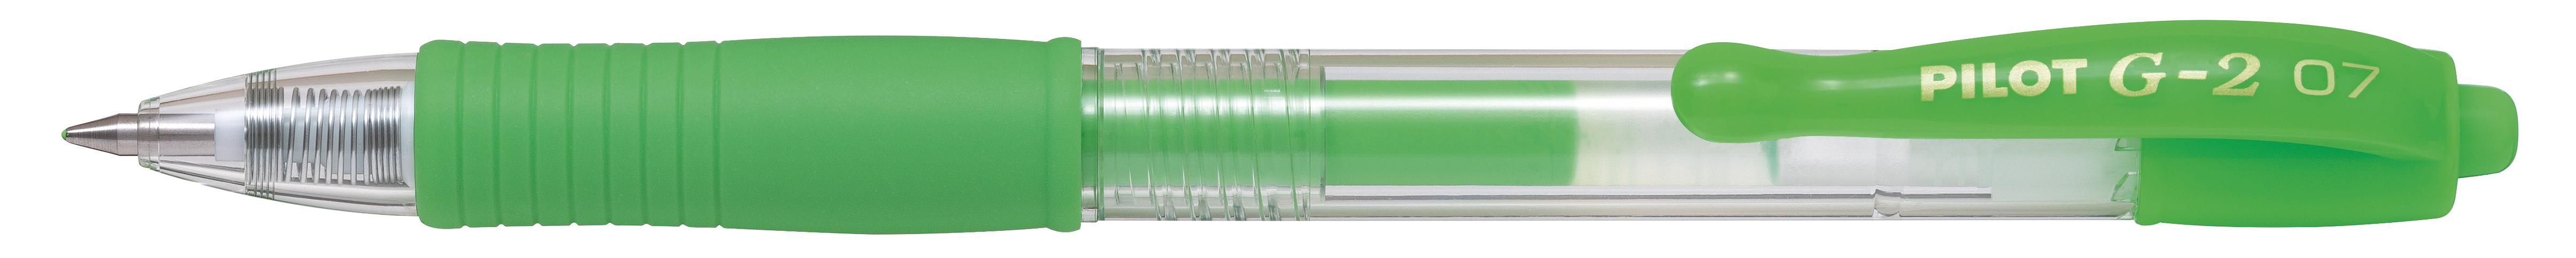 PILOT Gelroller G-2 Neon 0.7mm BL-G2-7-NG vert